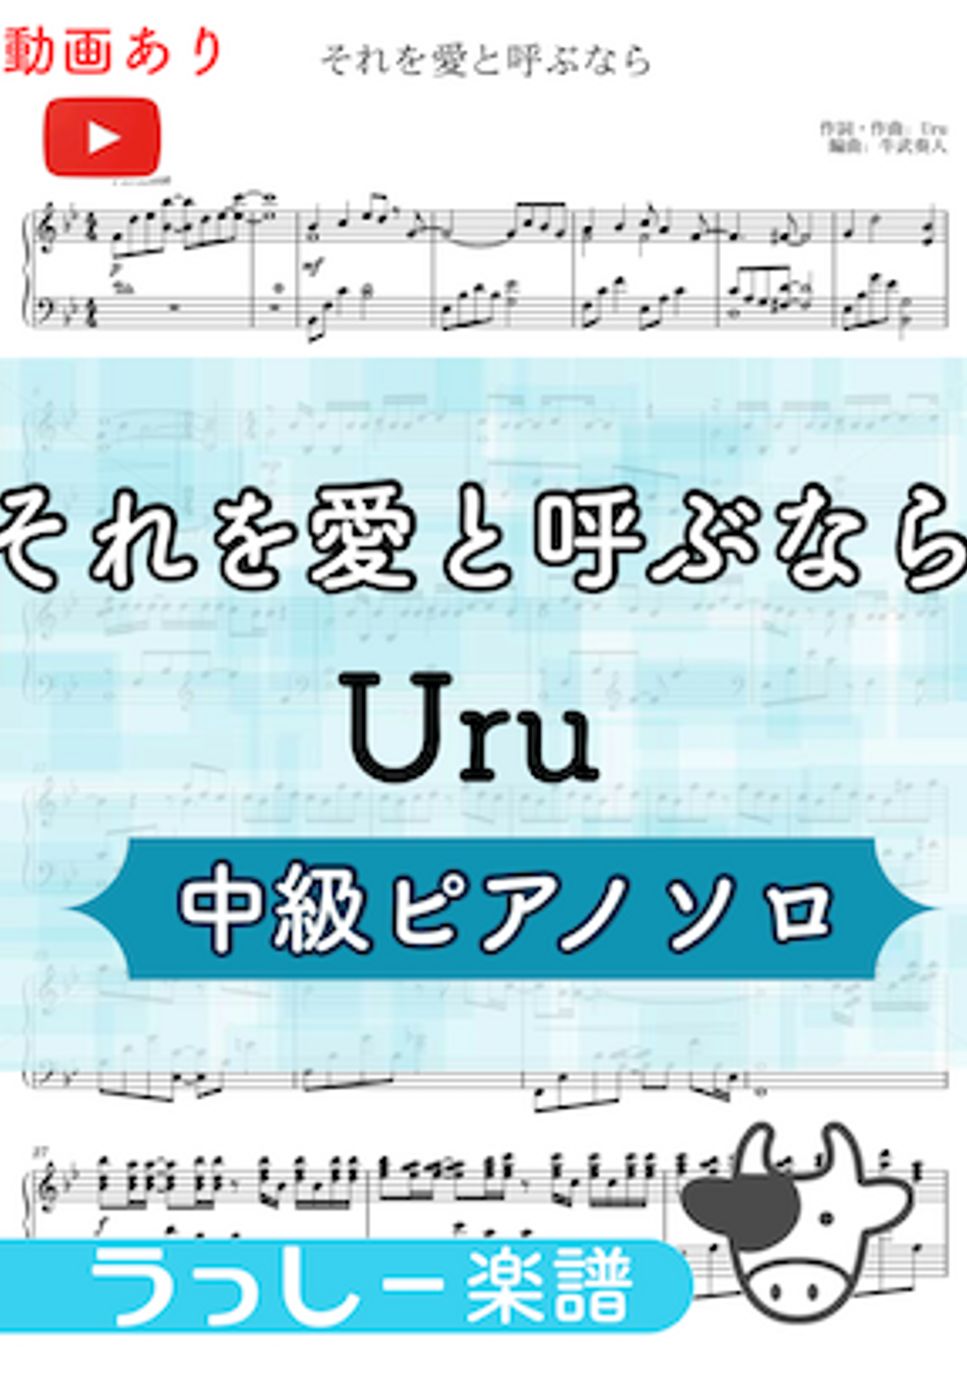 Uru - それを愛と呼ぶなら (中級ピアノ) by 牛武奏人